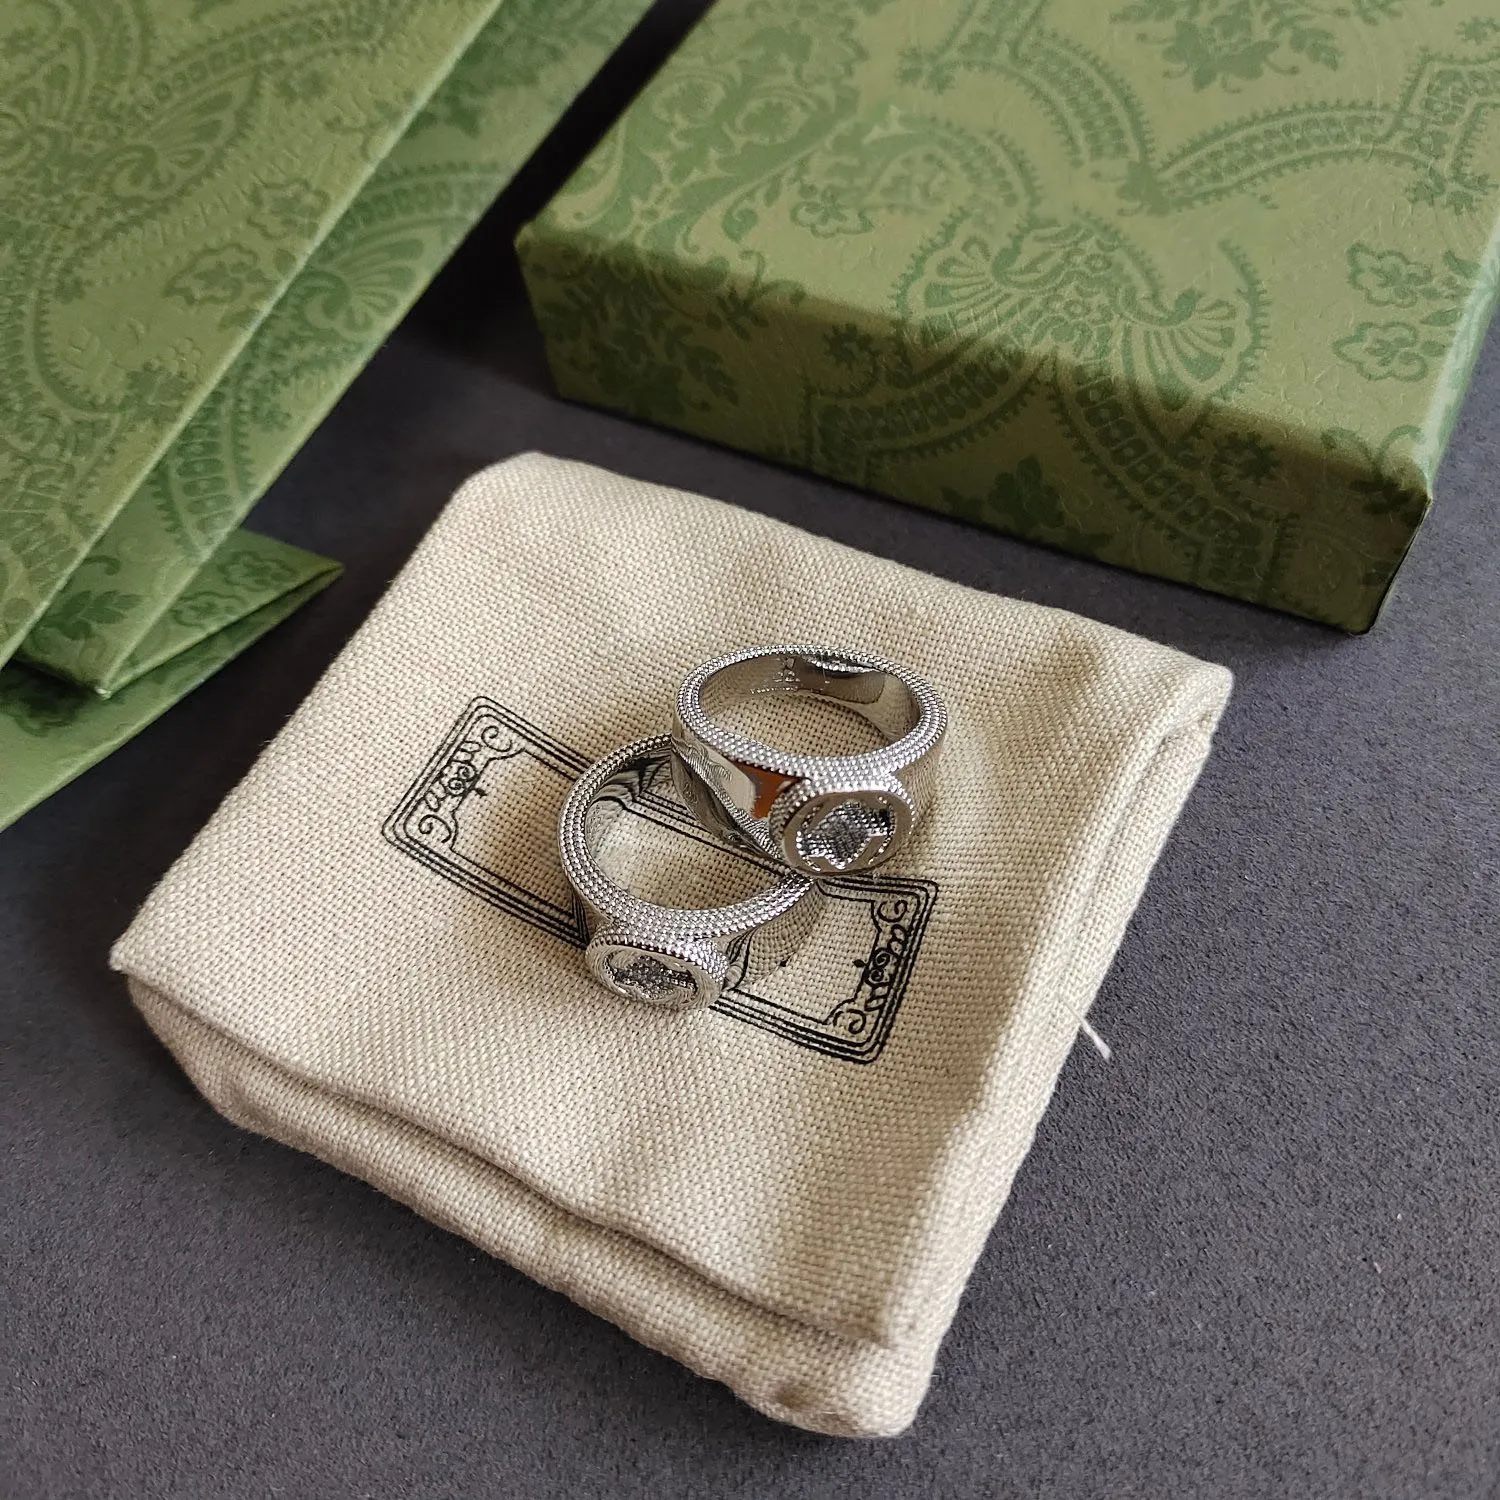 كلاسيكية رائعة 925 حلقات زفاف مطلية بالفضة مصمم خاتم رنين باجو بيجوكس للرجال للنساء عشاق الحفلات هدية مجوهرات عالية الجودة مع صندوق